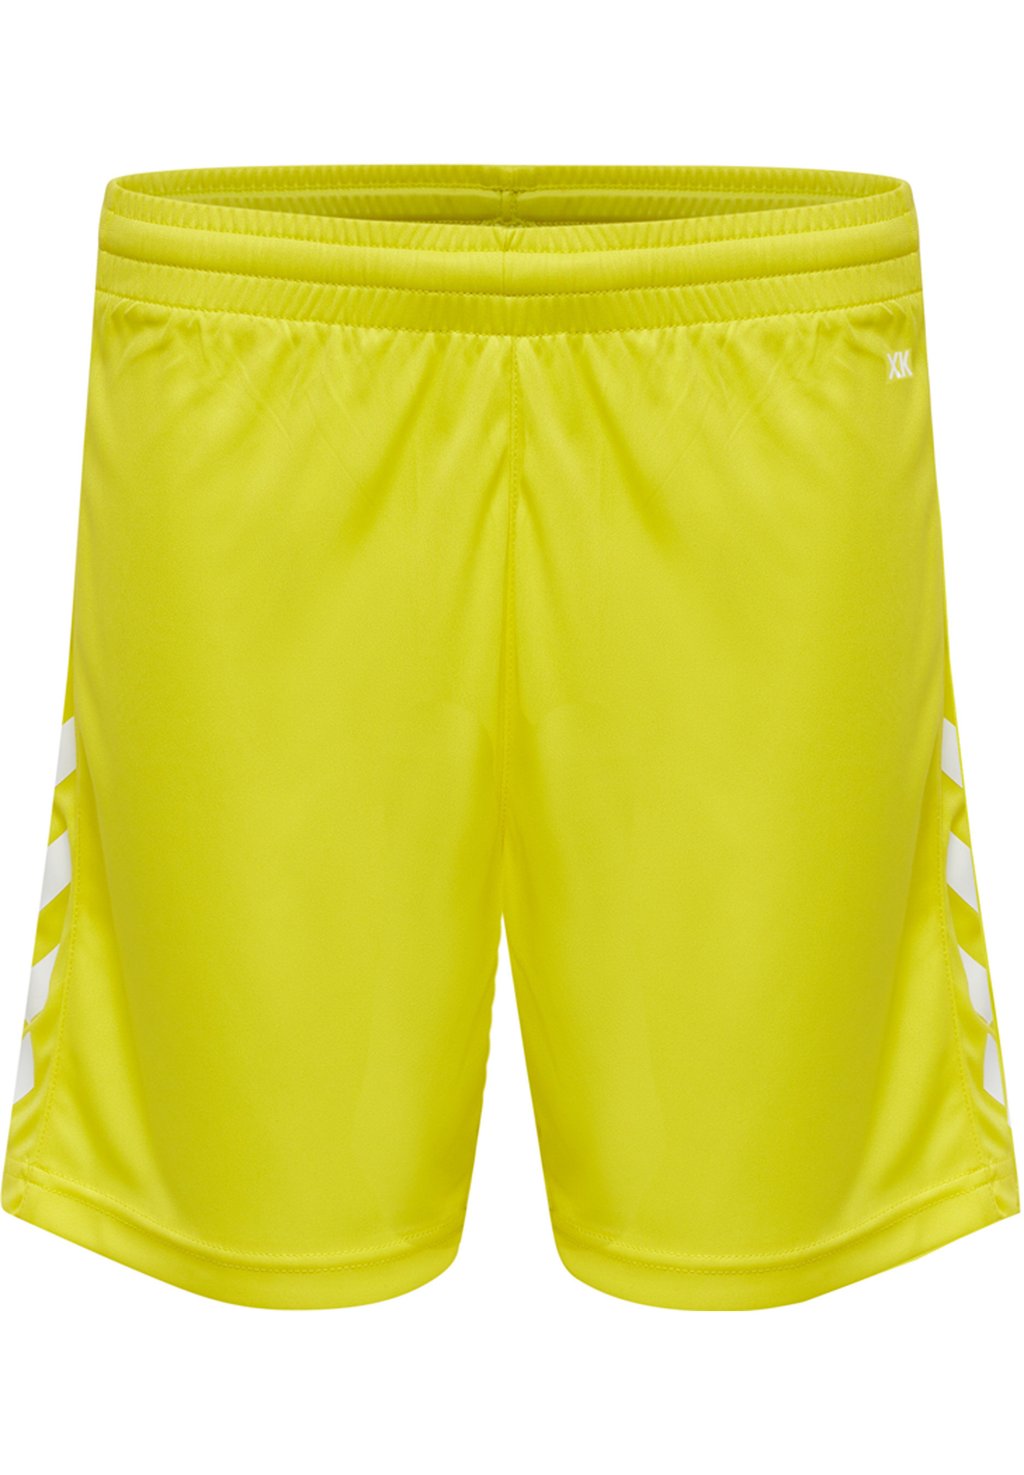 Спортивные шорты CORE XK POLY Hummel, цвет yellow спортивные шорты core xk poly hummel цвет acai